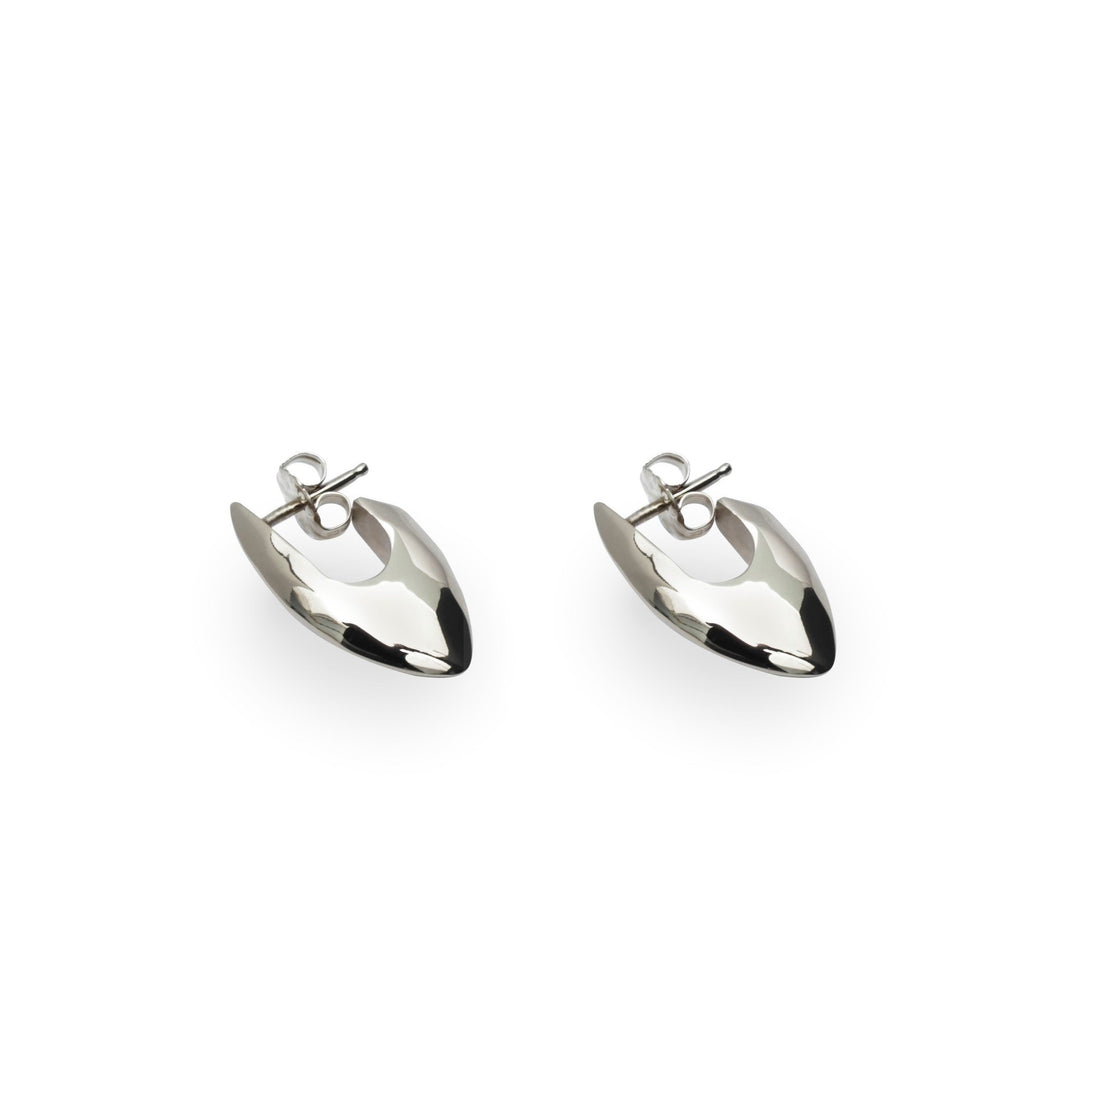 Stud earrings. Sterling silver stud jewelry. Elegant silver earrings